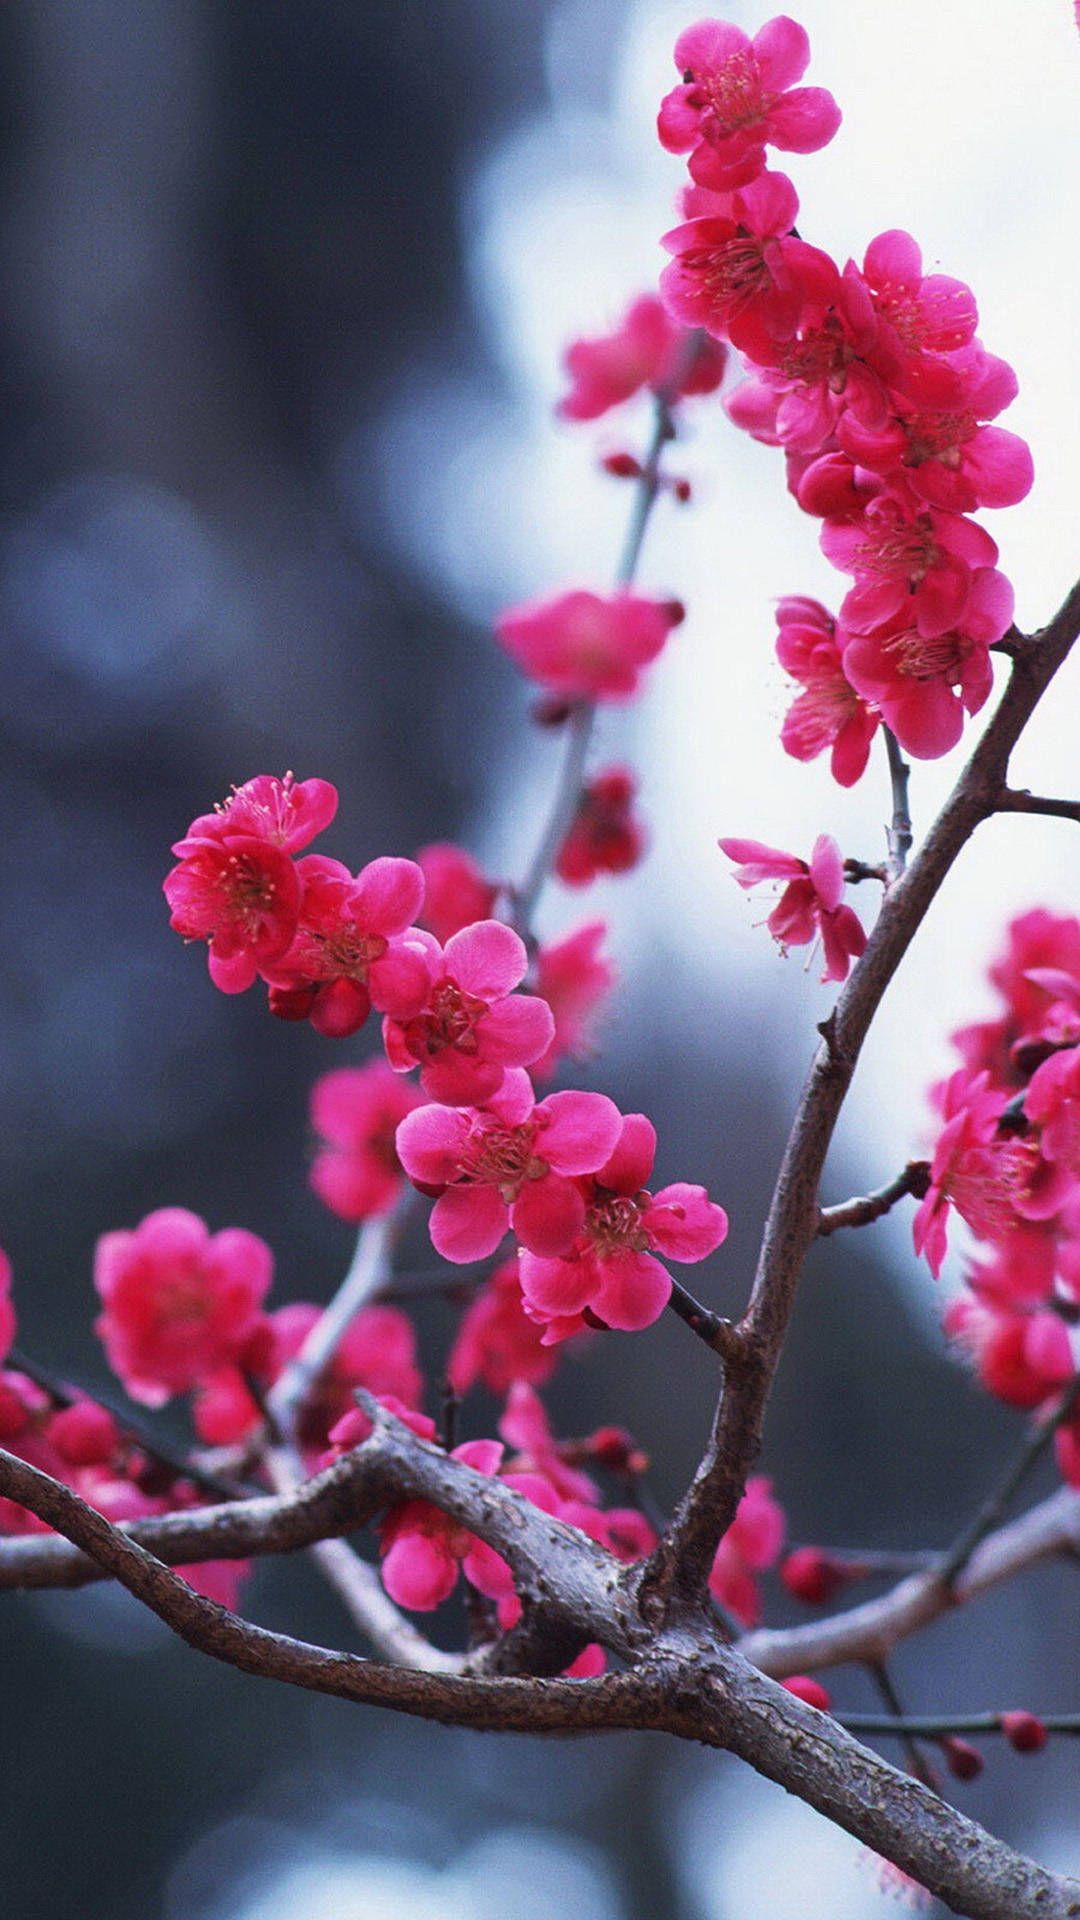 Cherry Blossom iPhone Wallpaper Widescreen. Flower wallpaper